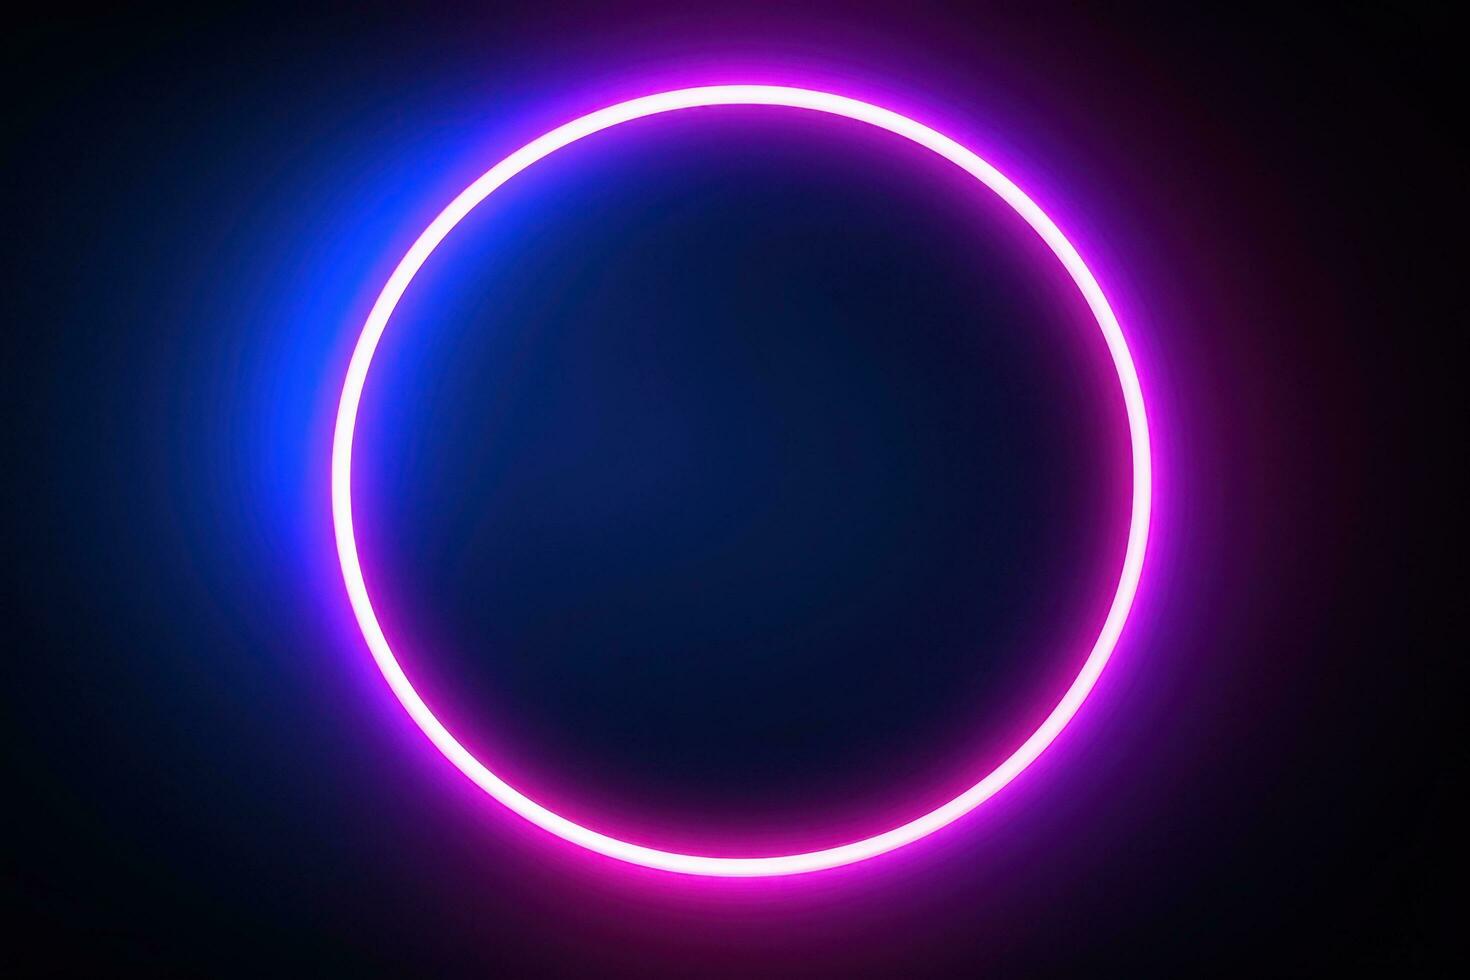 néon azul Rosa volta quadro, Armação anel, círculo forma brilhando luz com Sombrio fundo. anos 80 retro estilo, cópia de espaço foto